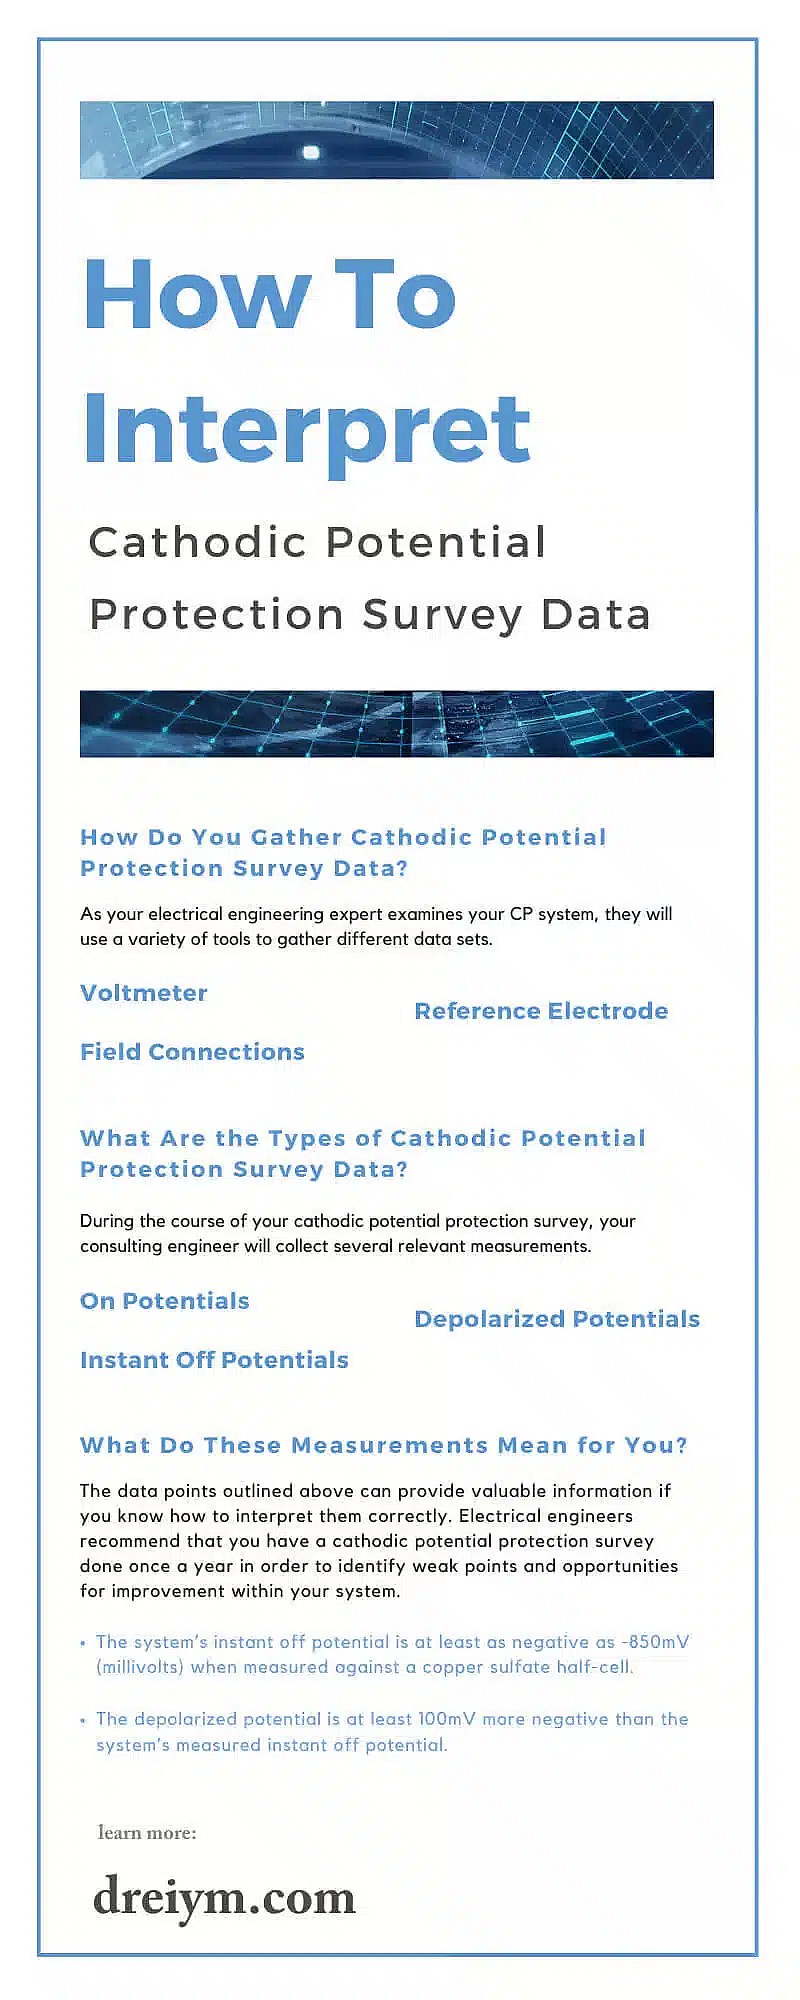 Cómo interpretar los datos del estudio de protección del potencial catódico